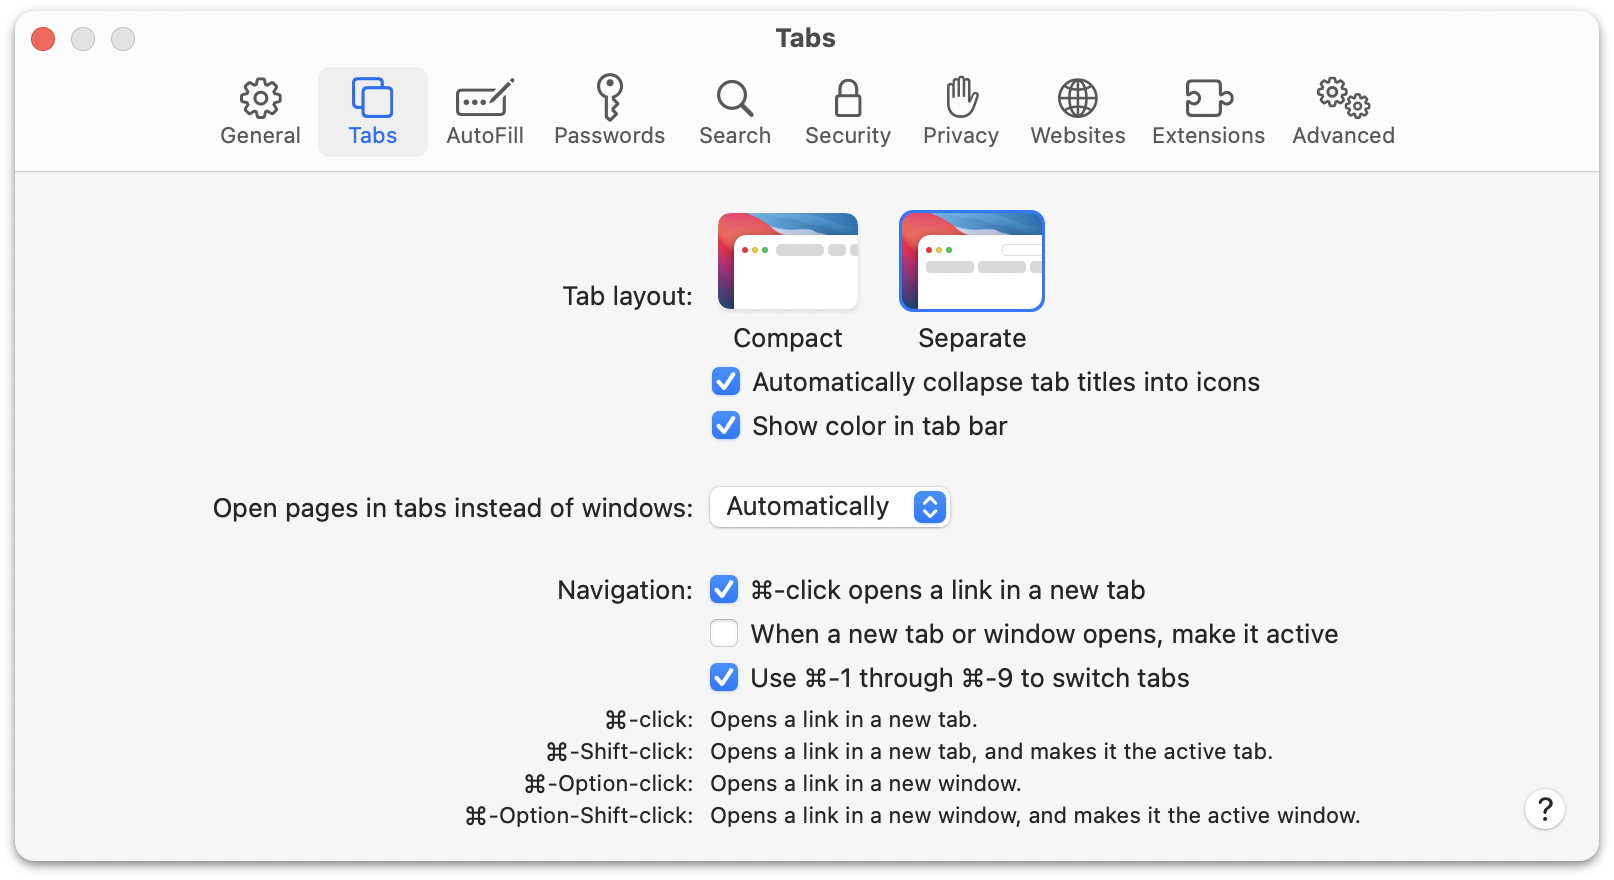 Screenshot of the default “Tab” preferences for Safari 15.0 on MacOS 11.